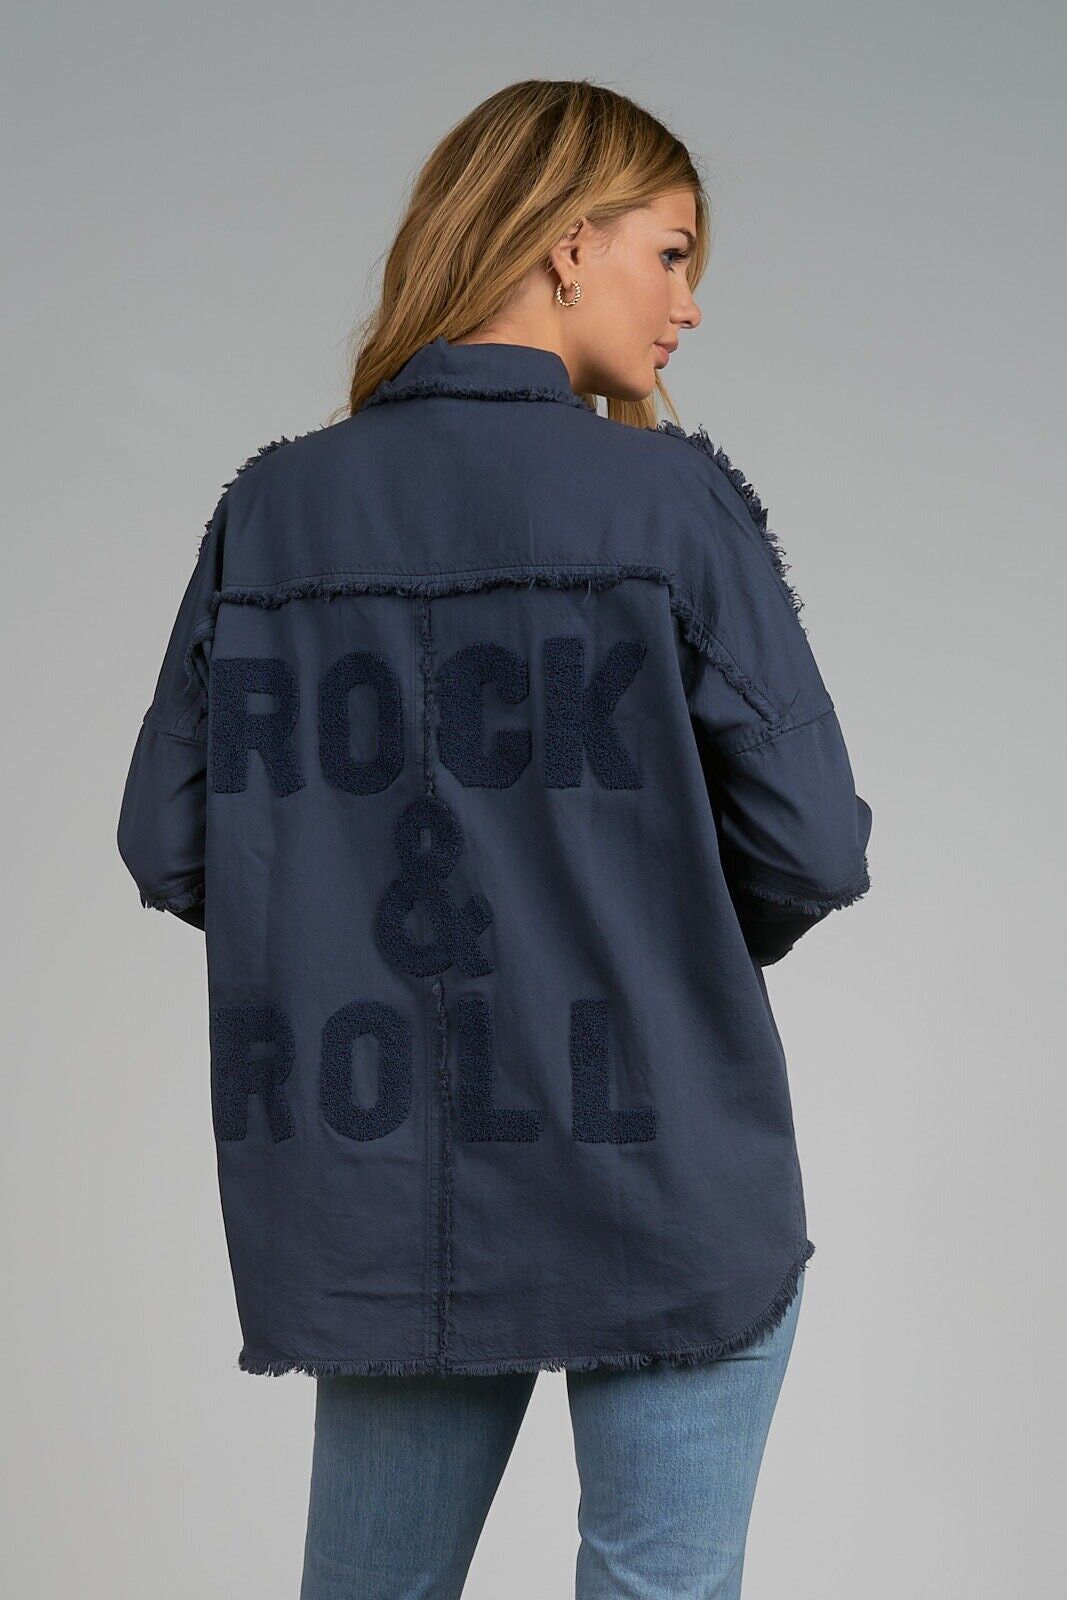 Devan Rock & Roll Jacket